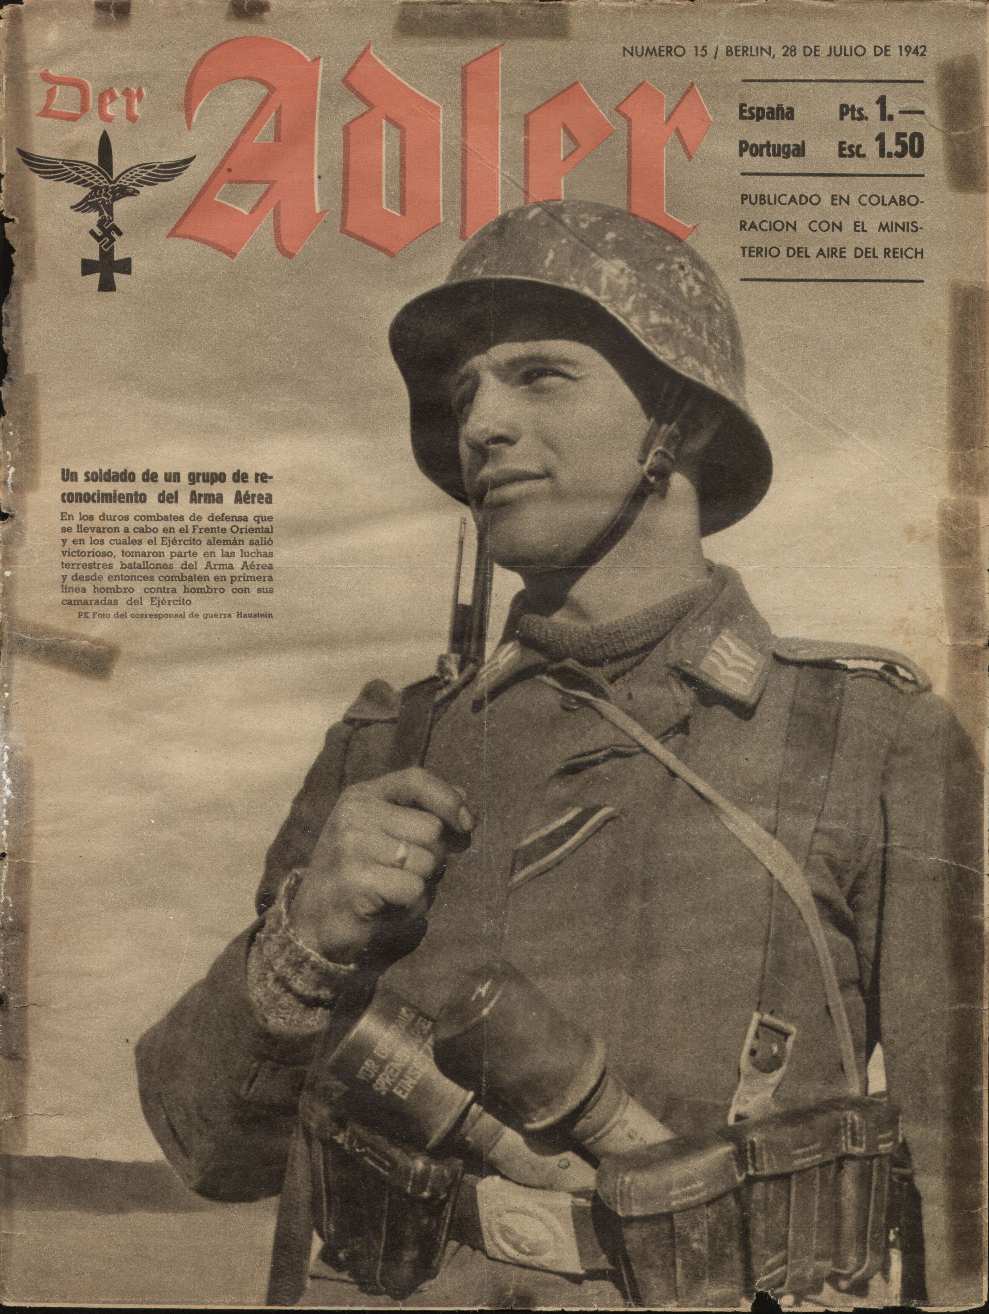 Немецкий журнал 5 букв. Der Adler журнал. Die Wehrmacht журнал 1942. Журнал Адлер 3 Рейх. Немецкие газеты времен войны.